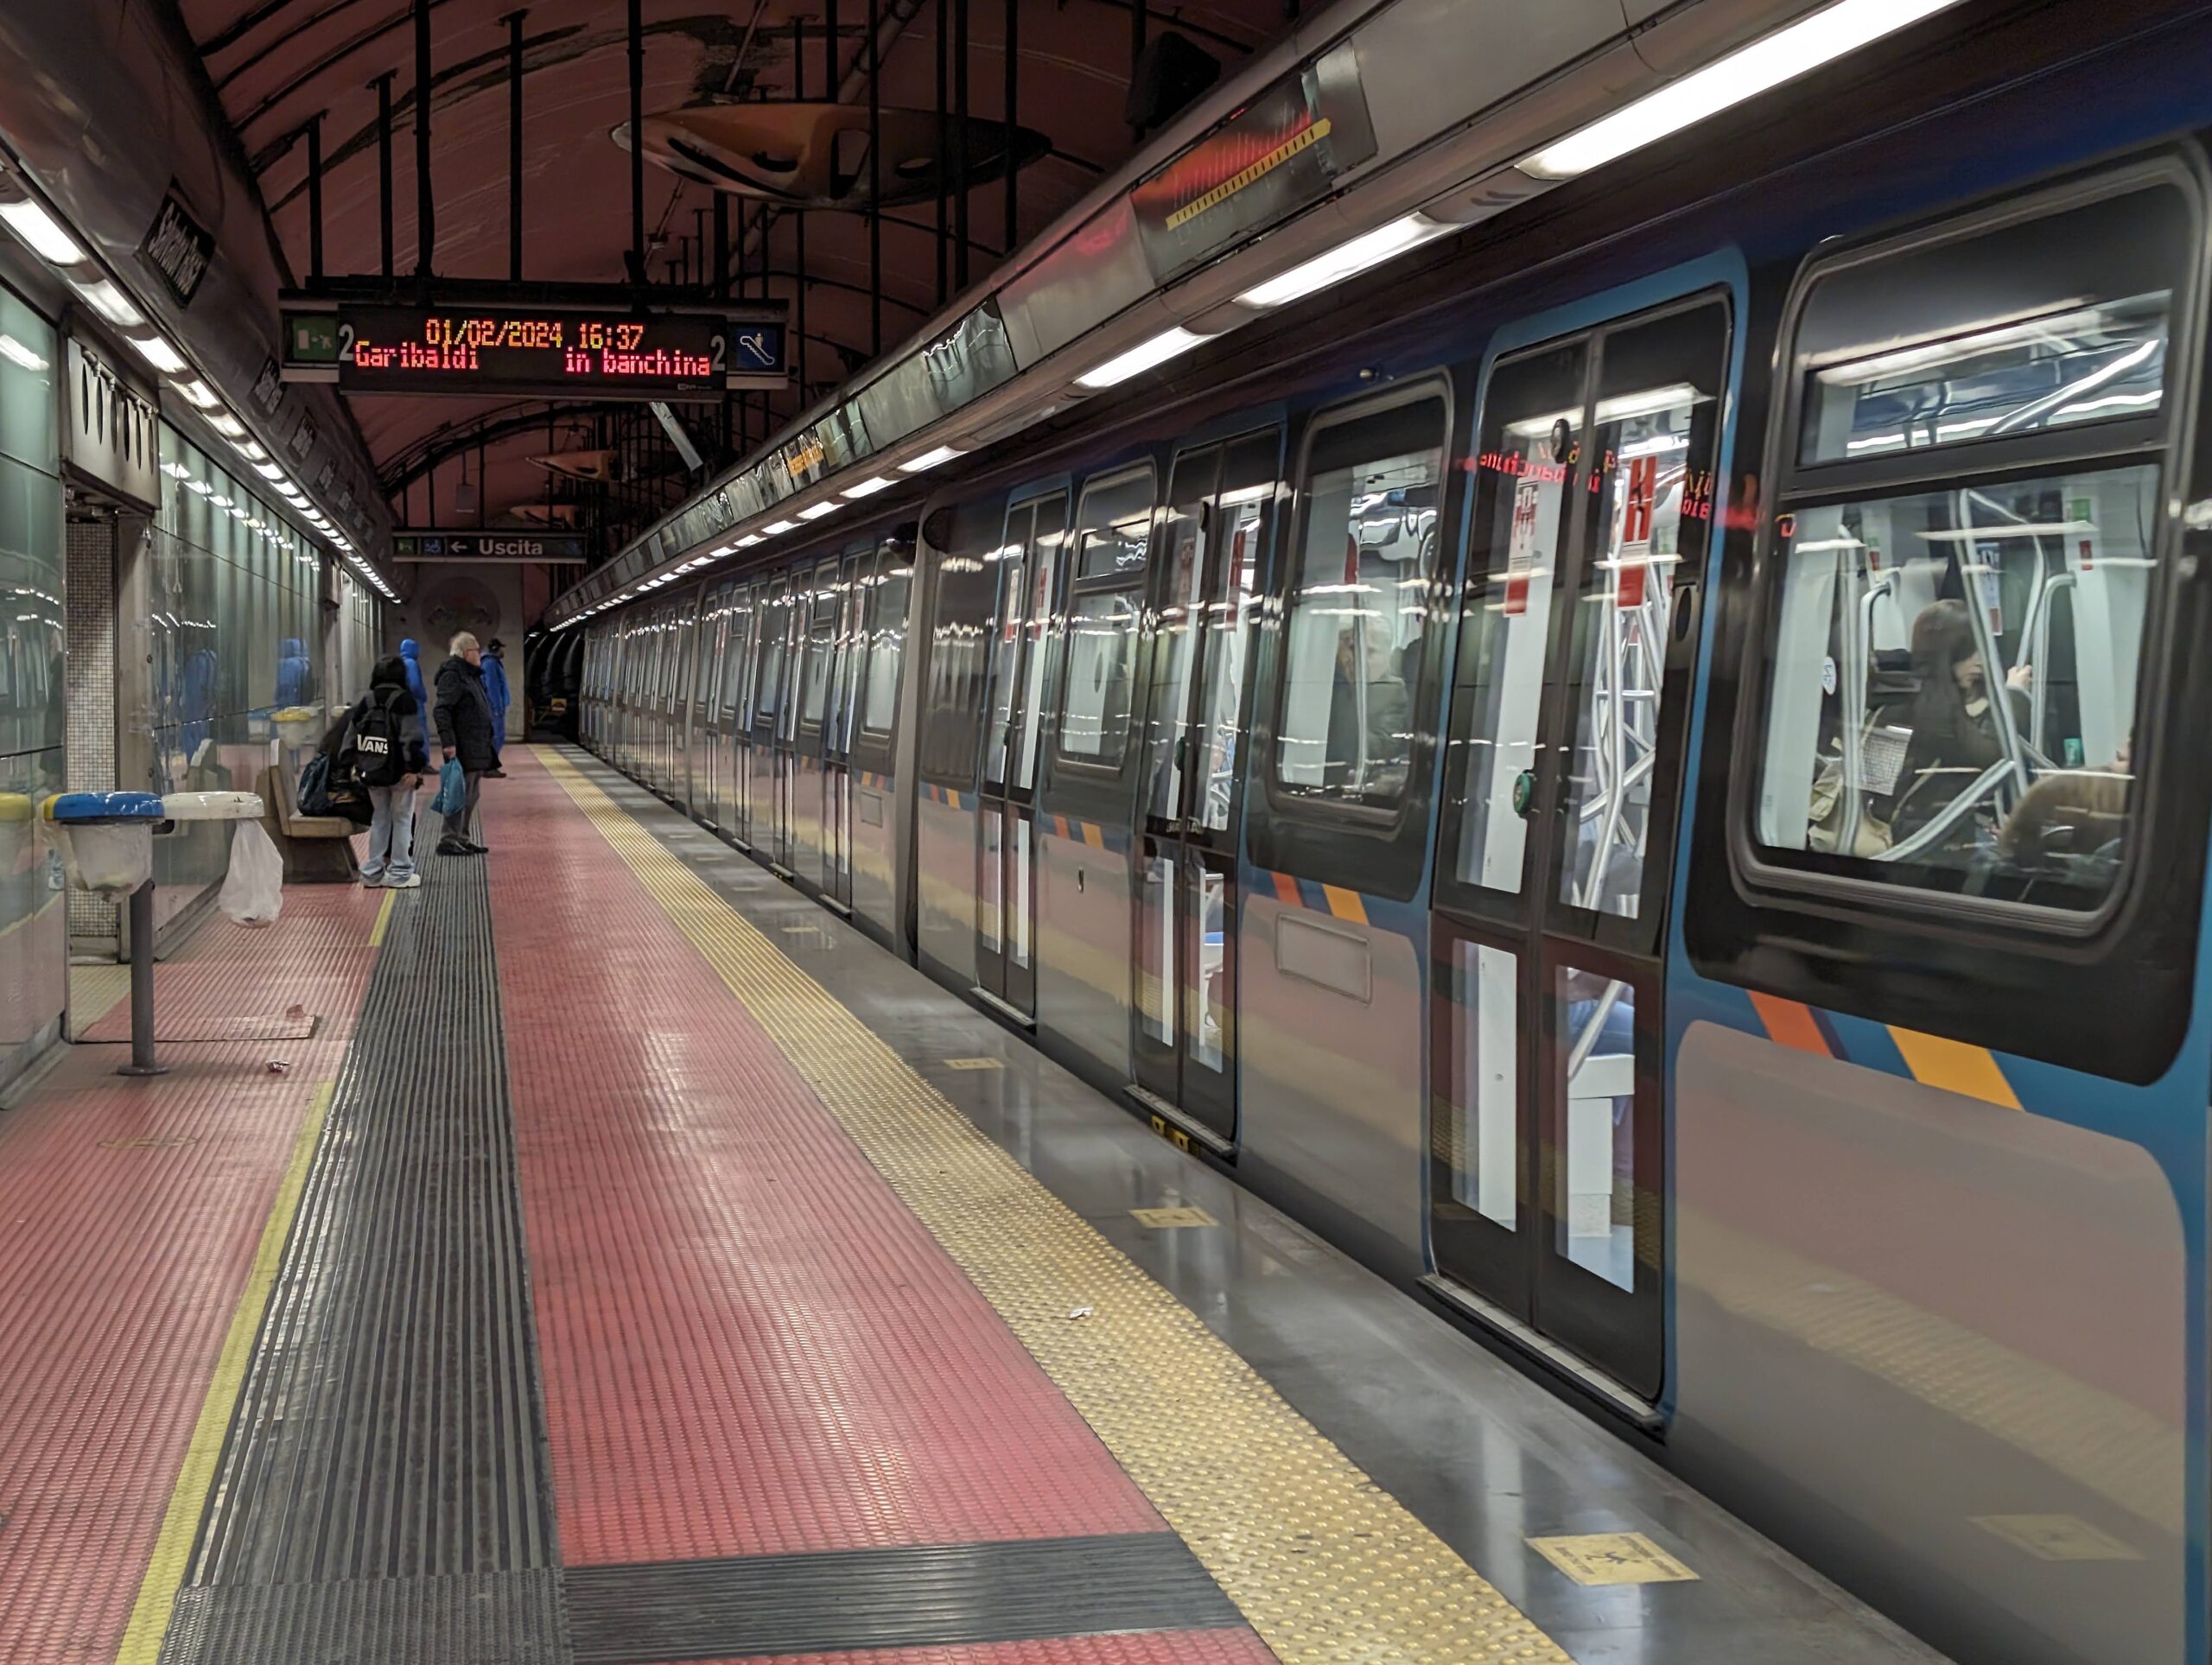 Naples Metro Line 1